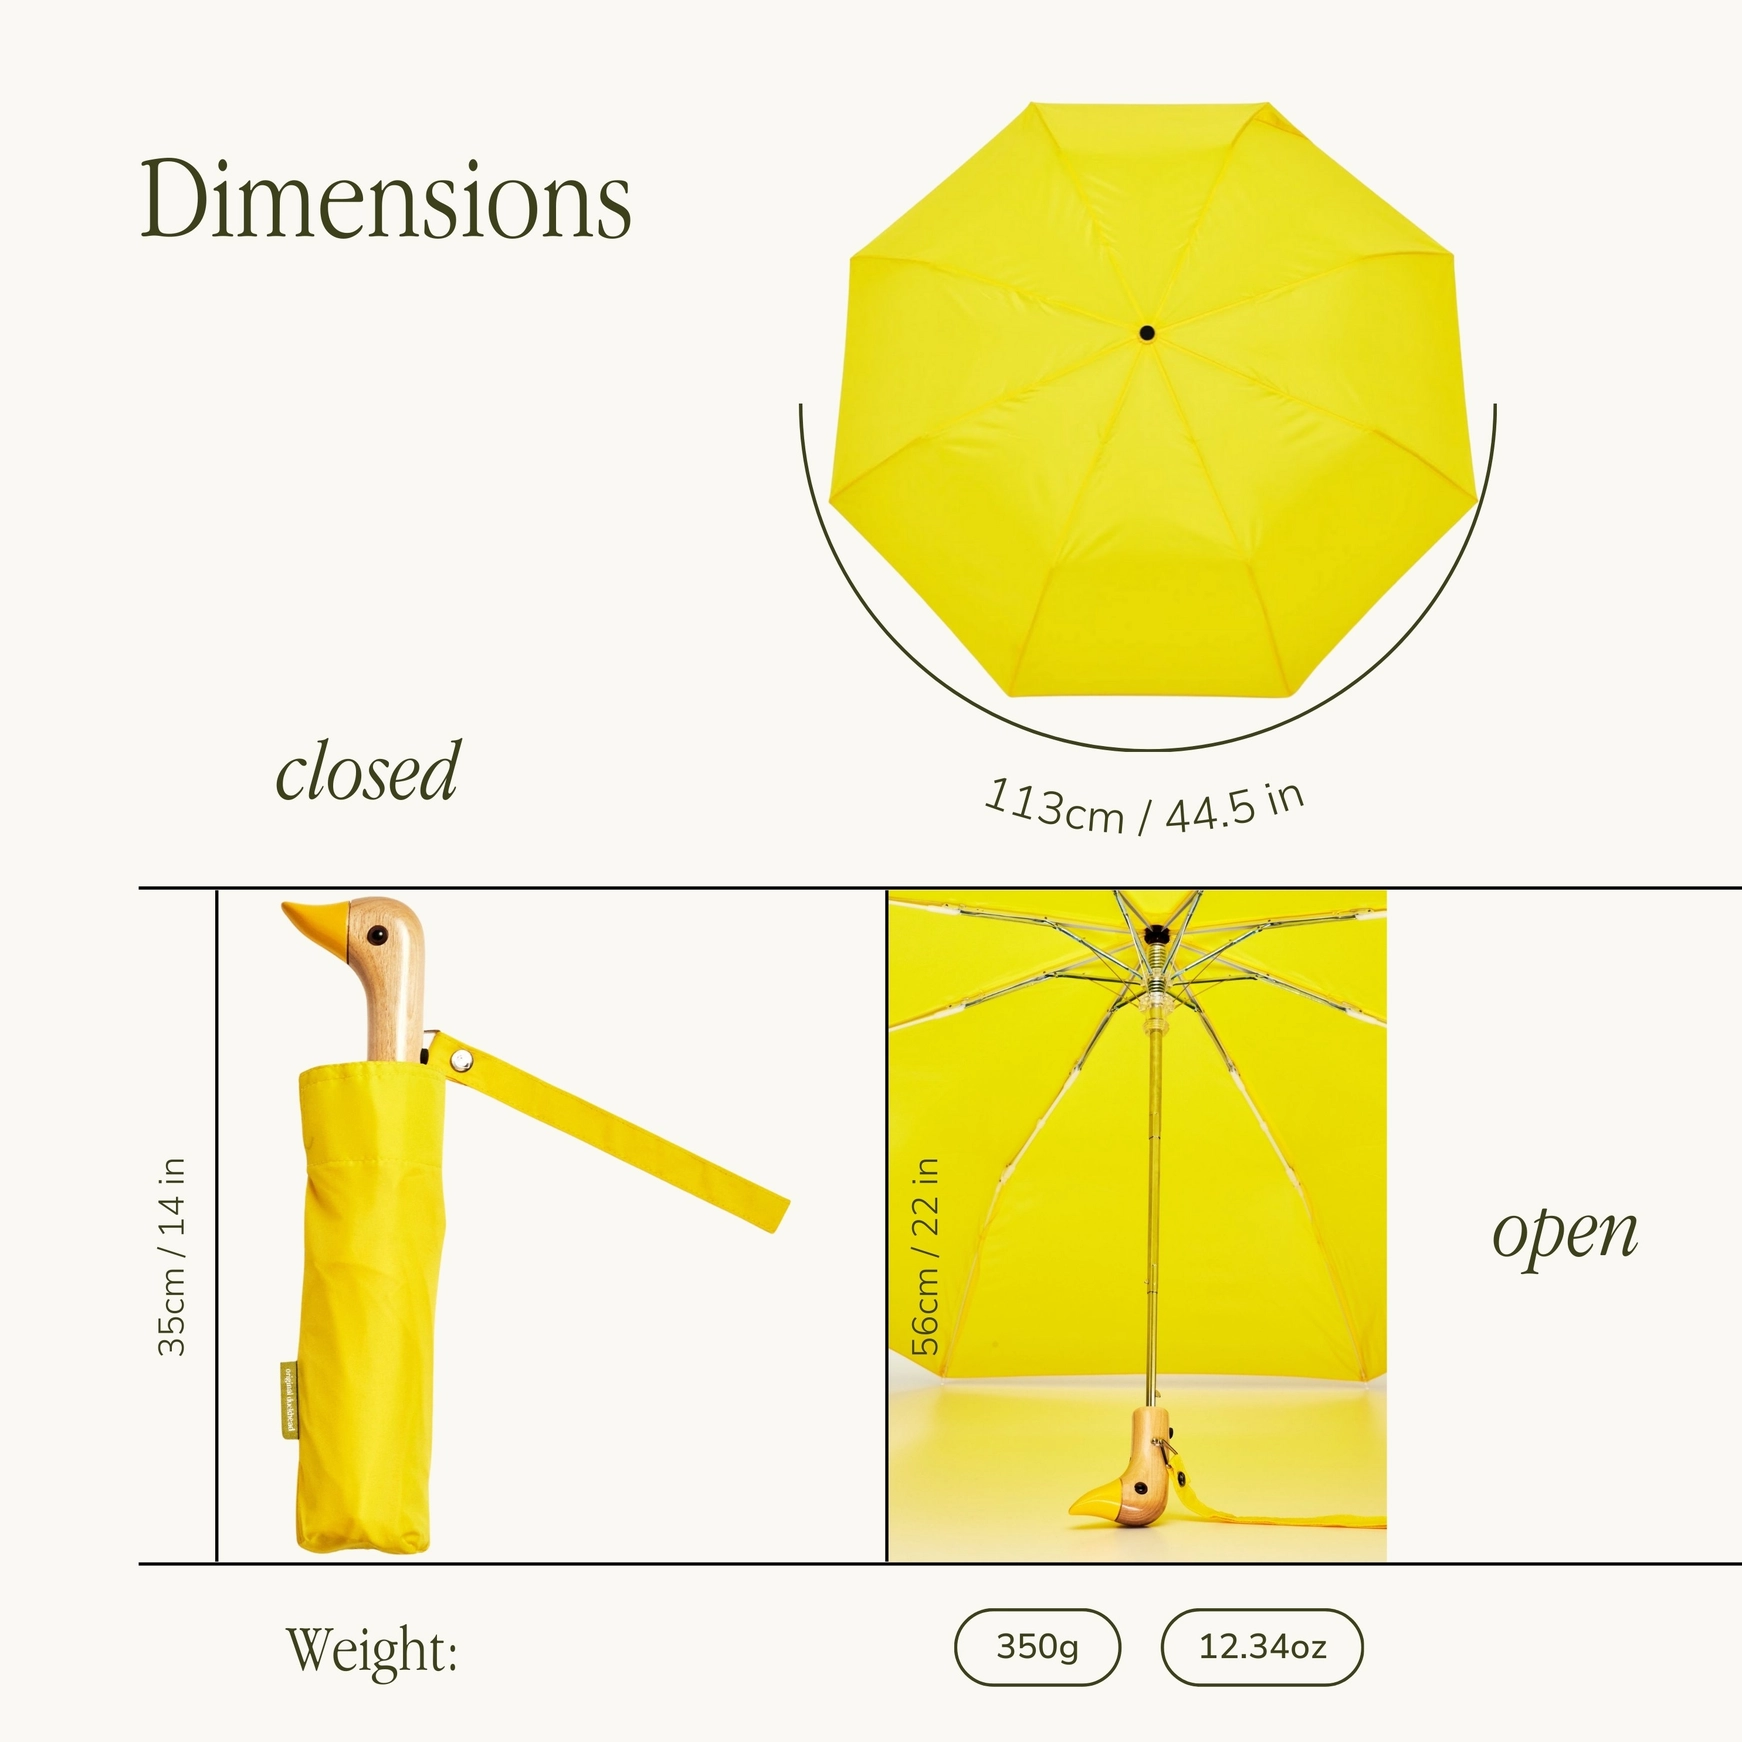 Regenschirm Original Duckhead GELB,  Compact Duck Umbrella  